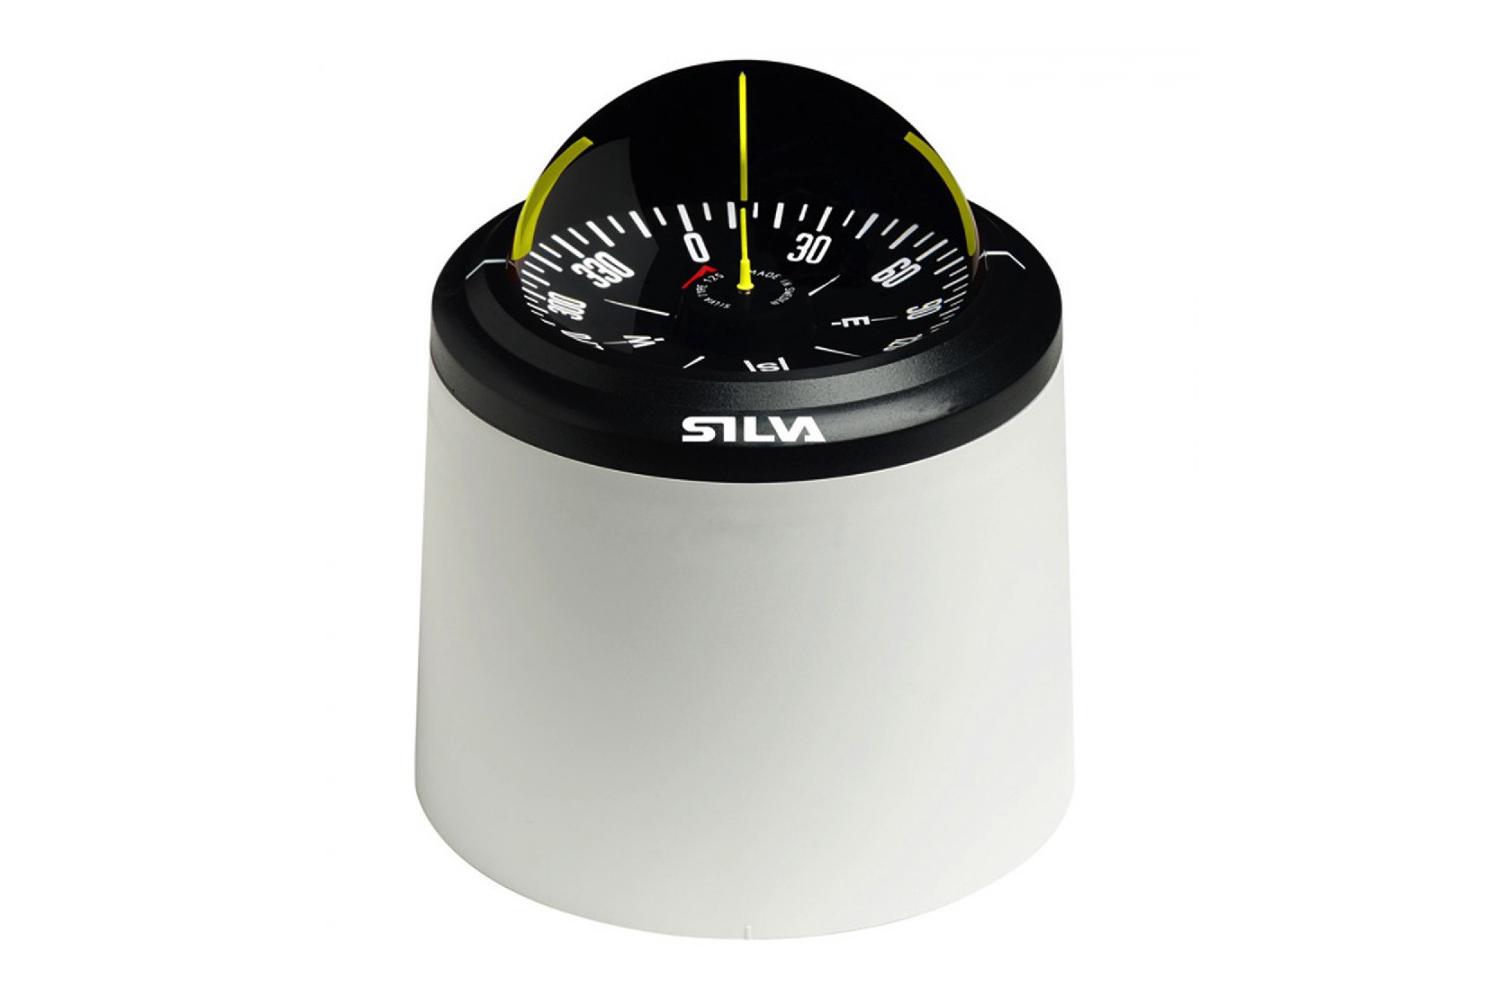 Silva 125T kompas